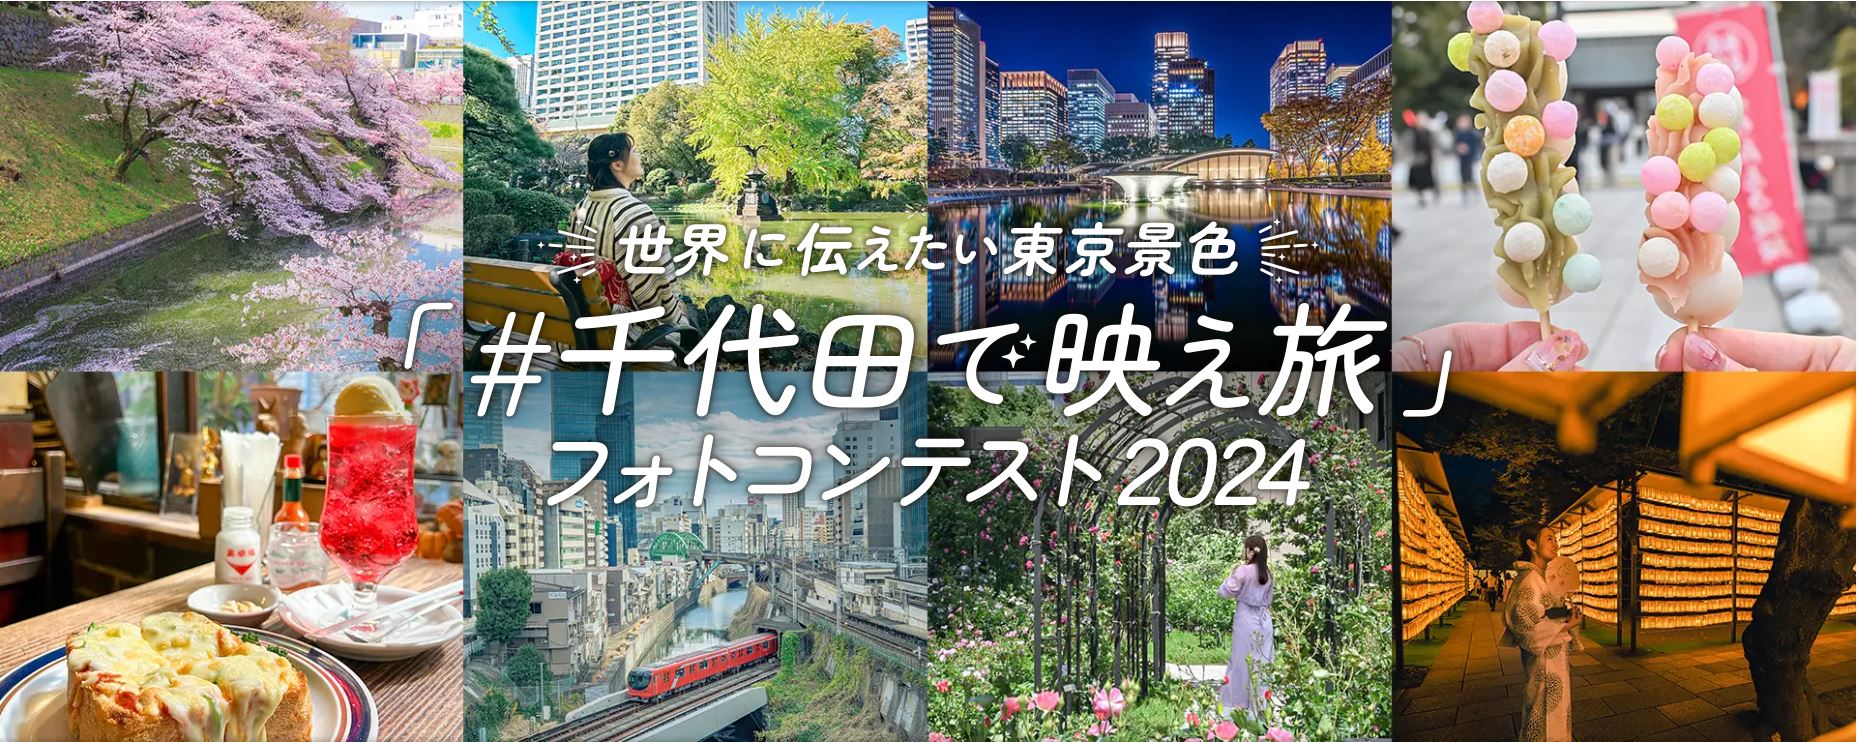 世界に伝えたい東京景色「#千代田で映え旅」フォトコンテスト2024